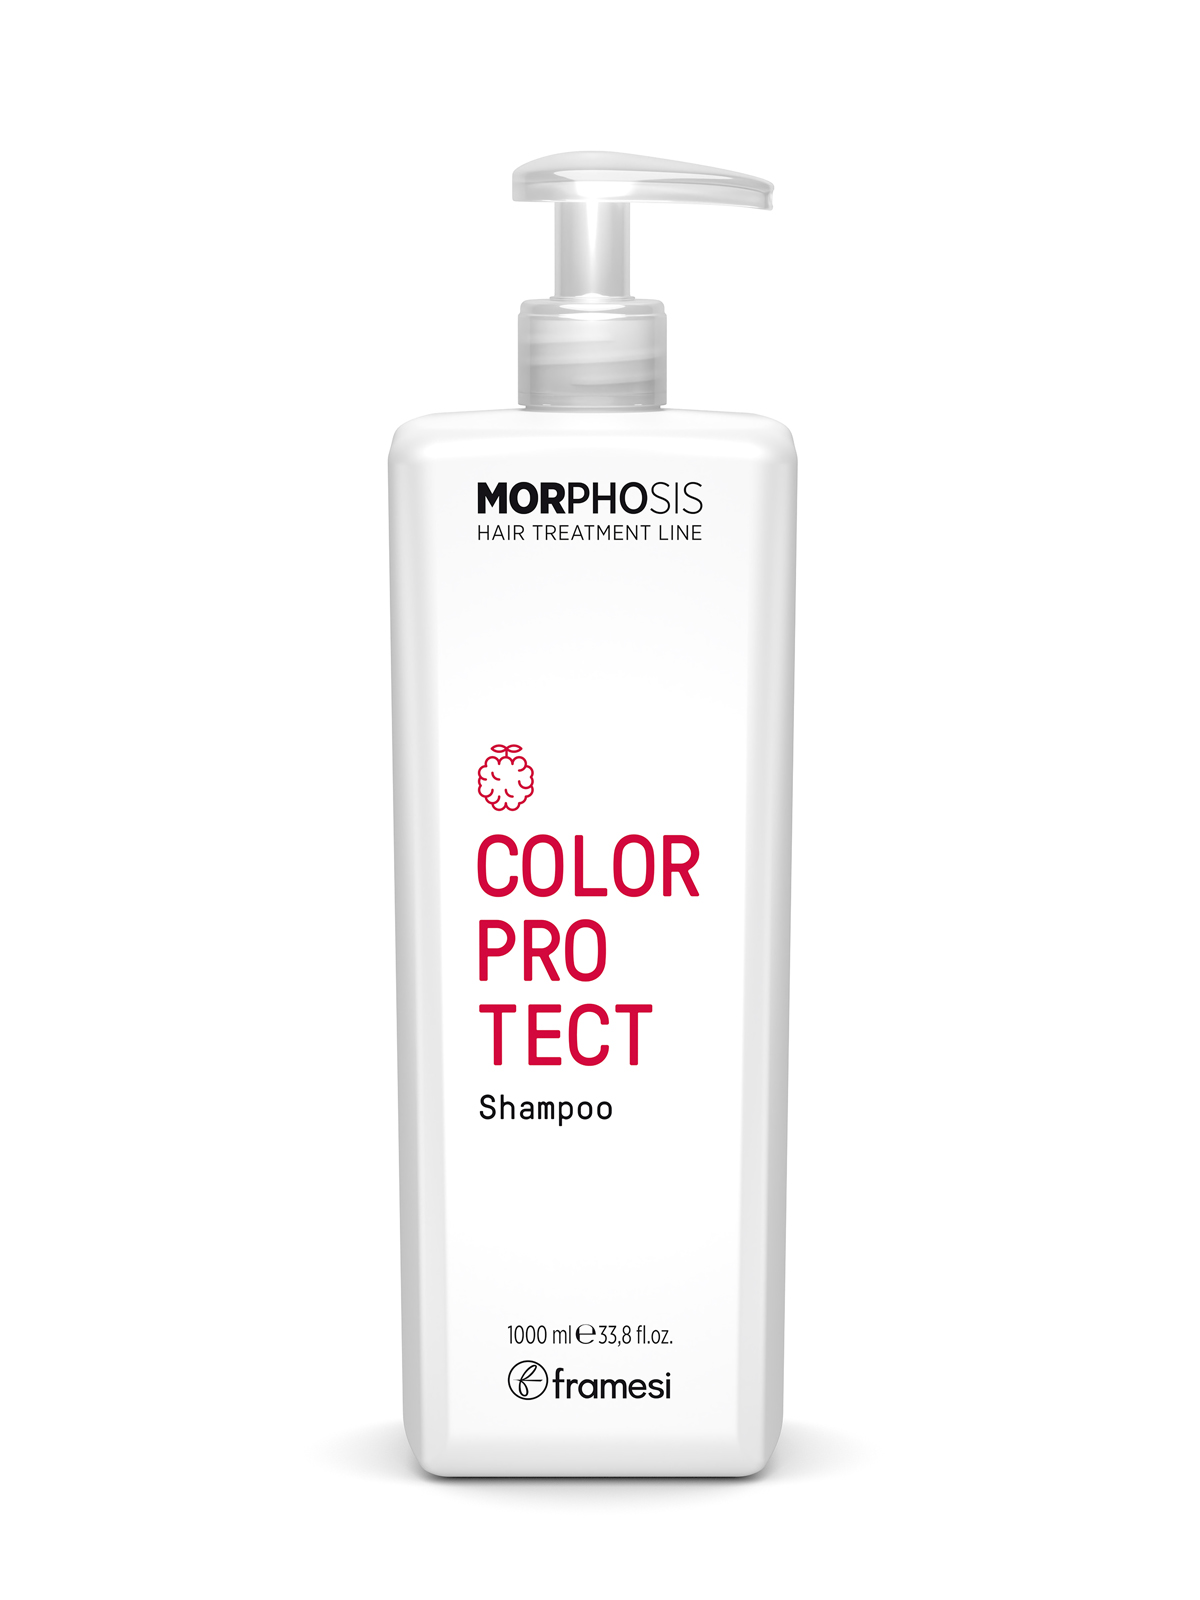 Шампунь Framesi Color protect shampoo для окрашенных волос 1000 мл framesi шампунь для окрашенных волос morphosis color protect shampoo 250